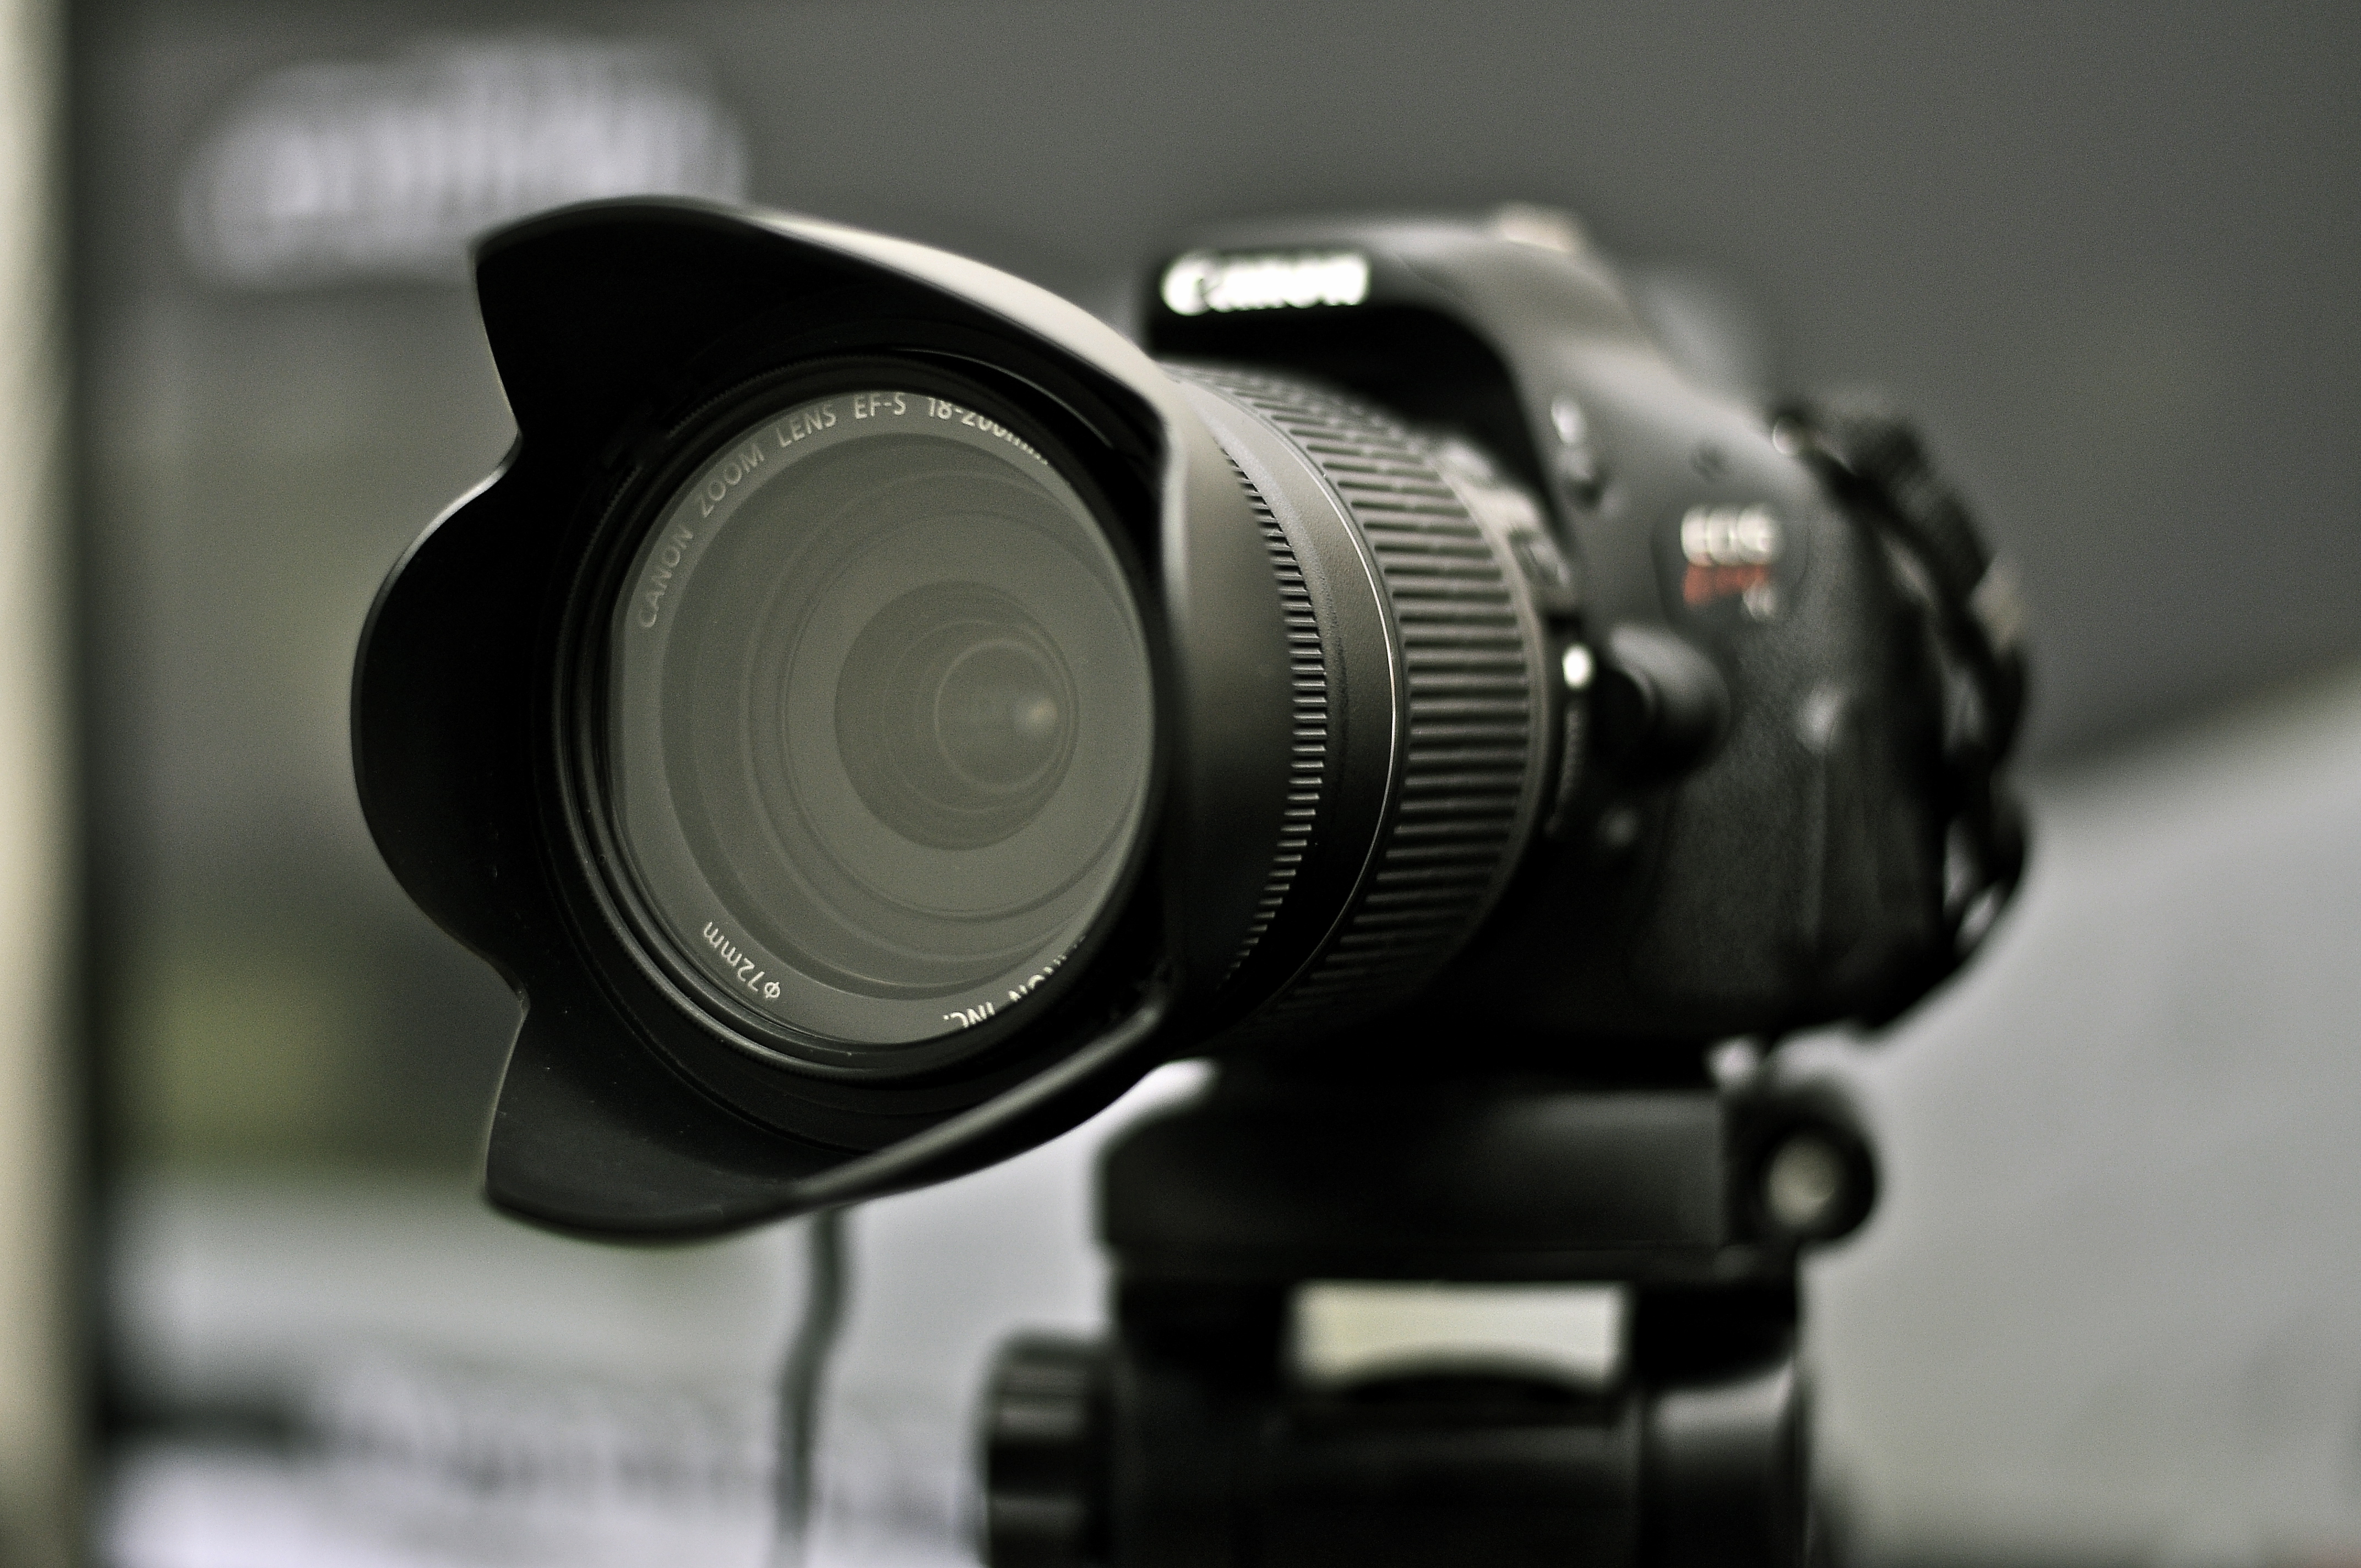 fond d'écran caméra hd,caméra,objectif de la caméra,lentille,appareil photo reflex mono objectif,appareil photo numérique